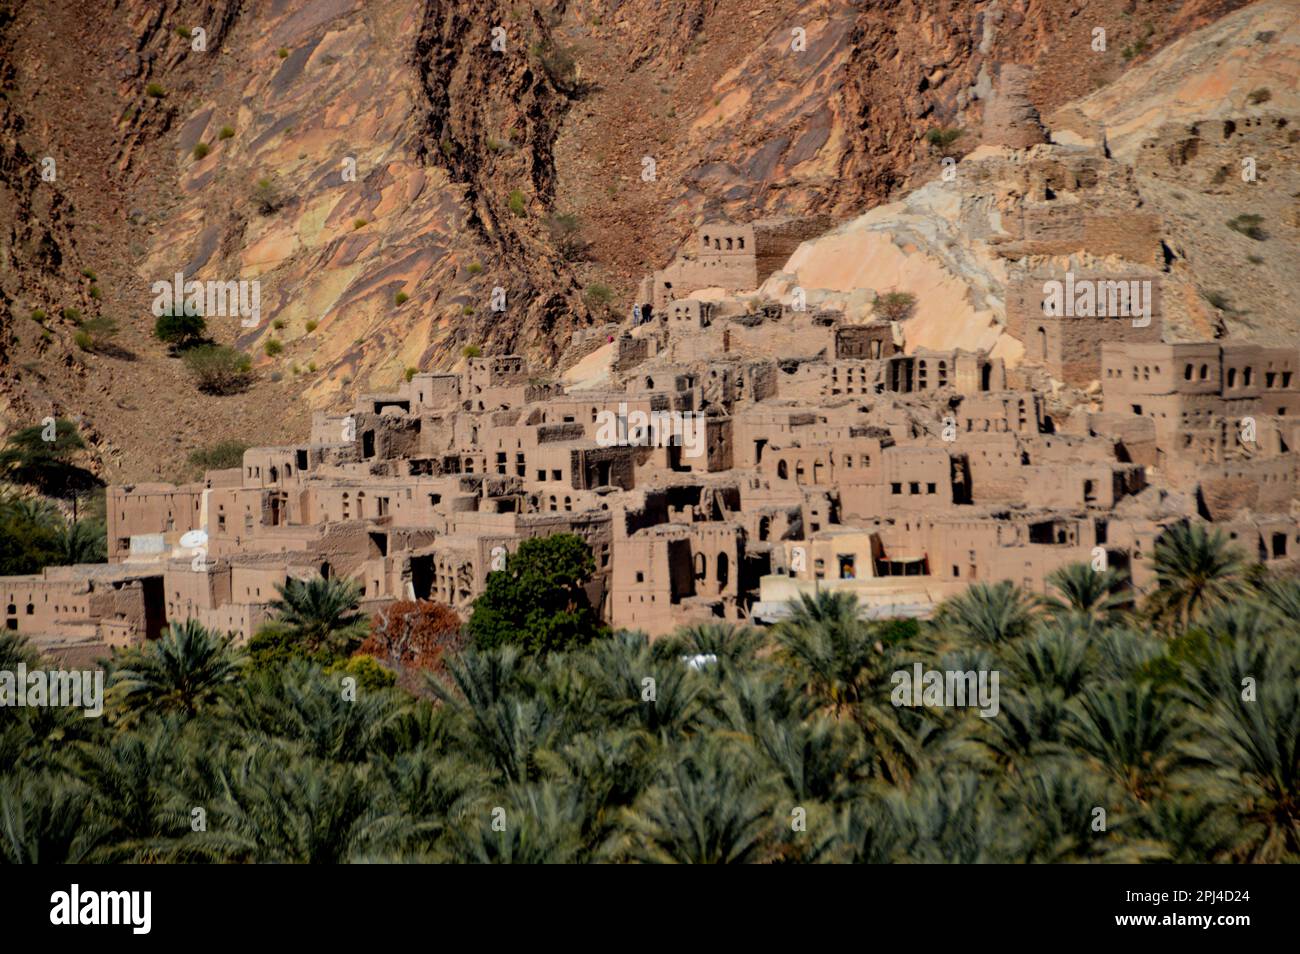 Oman, Birkat al Mawz : un village de bâtiments en brique-boue abandonnés au pied d'un affleurement spectaculaire en pierre, entouré d'une mer de palmiers dattiers. Banque D'Images